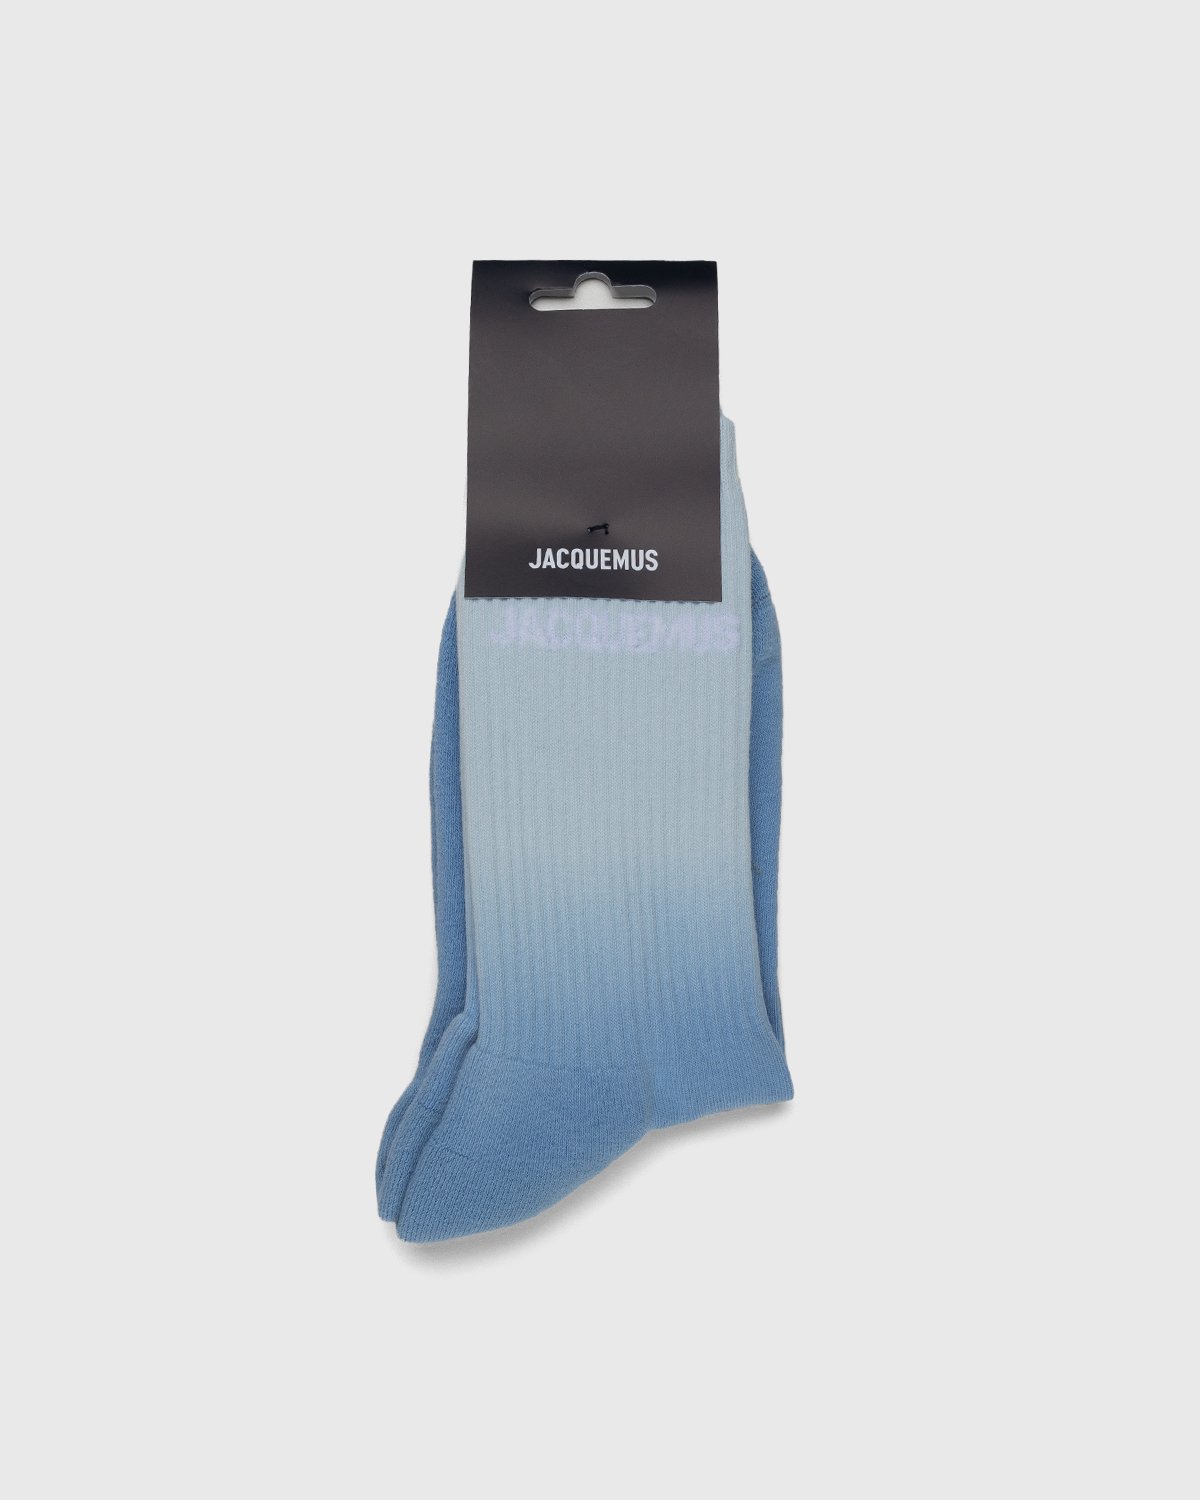 JACQUEMUS - Les Chaussettes Moisson Light Blue - Accessories - Blue - Image 1